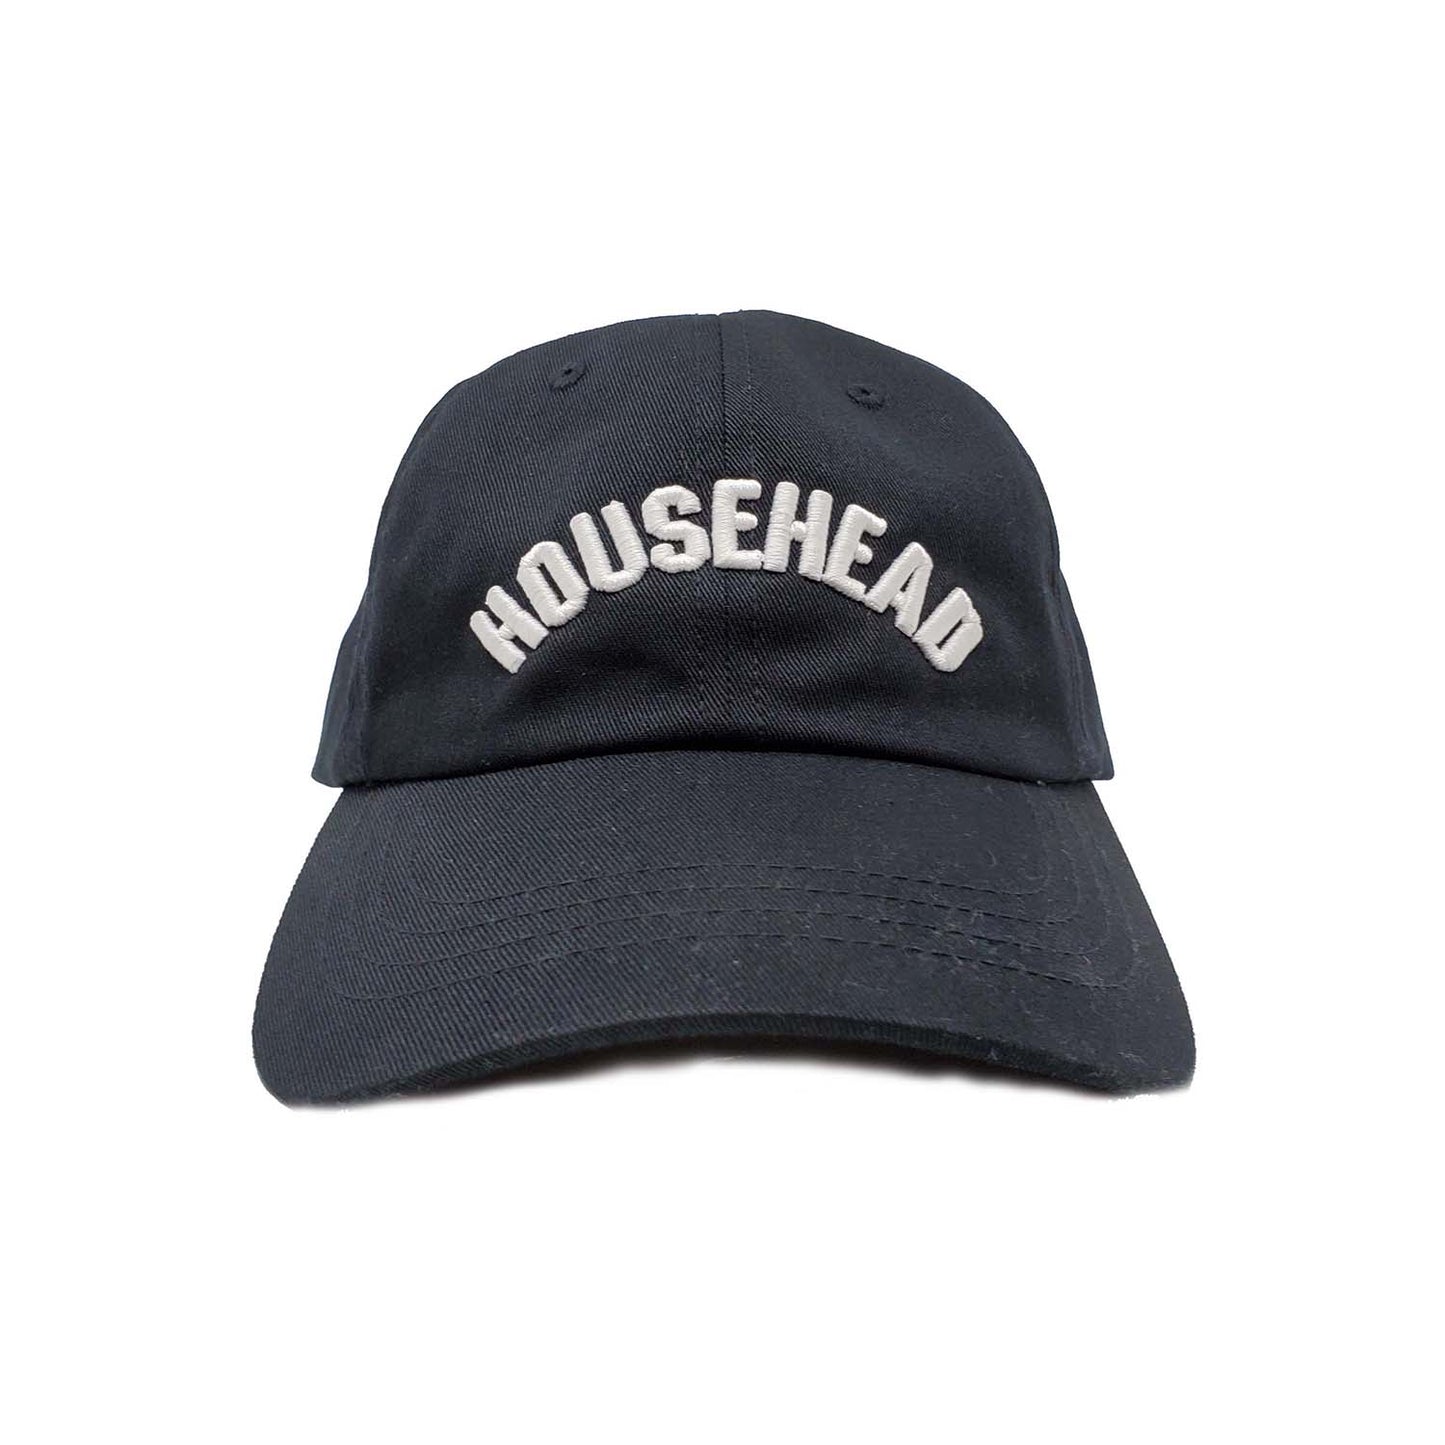 Househead Dad Cap